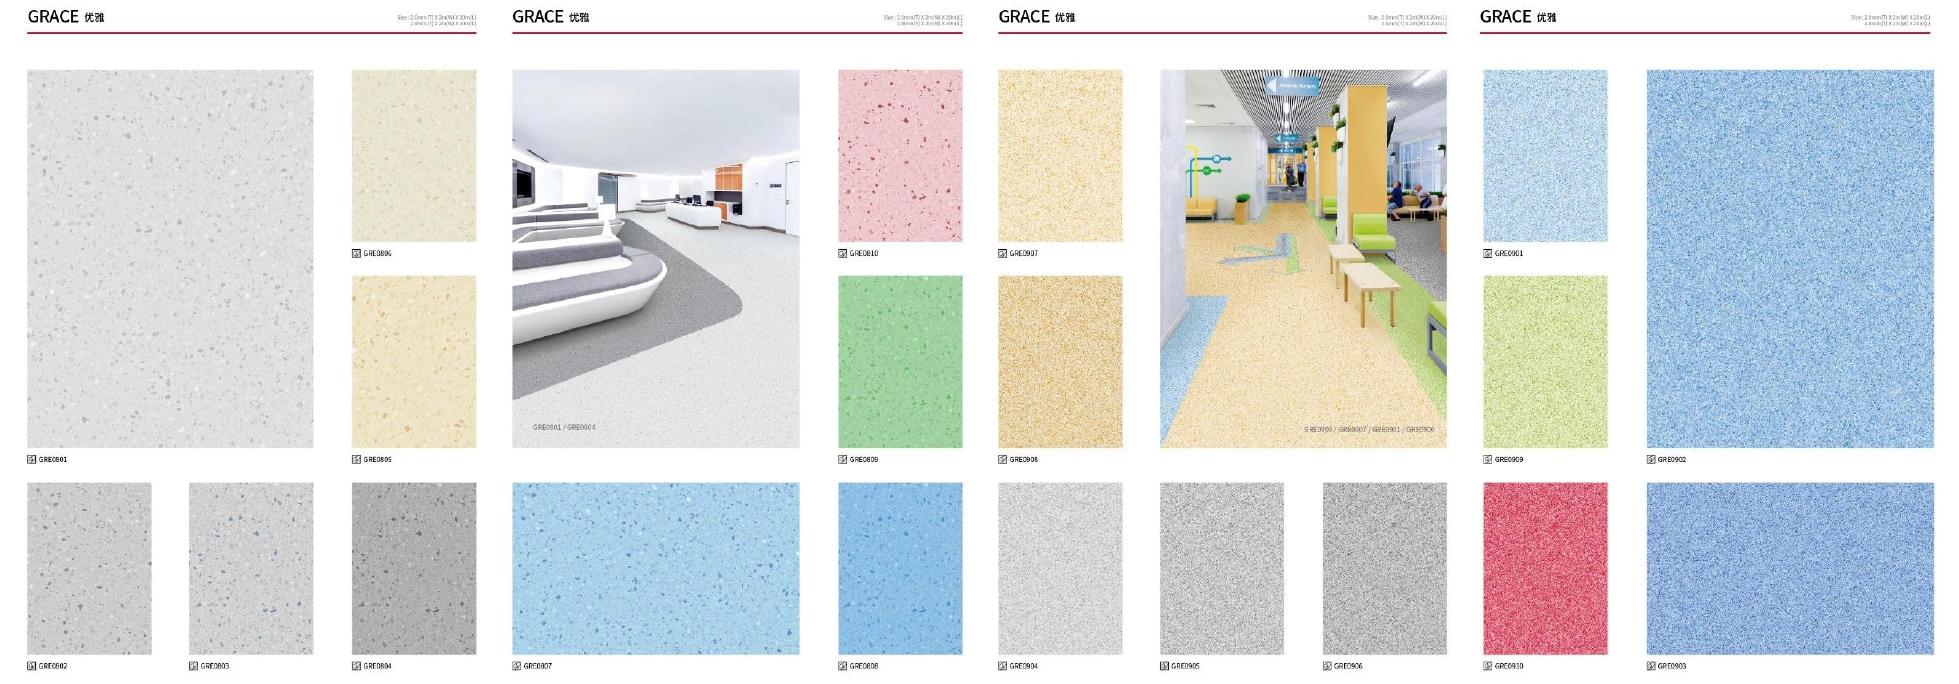 福建PVC塑胶地板LG新系列优雅地板-福州及*供应